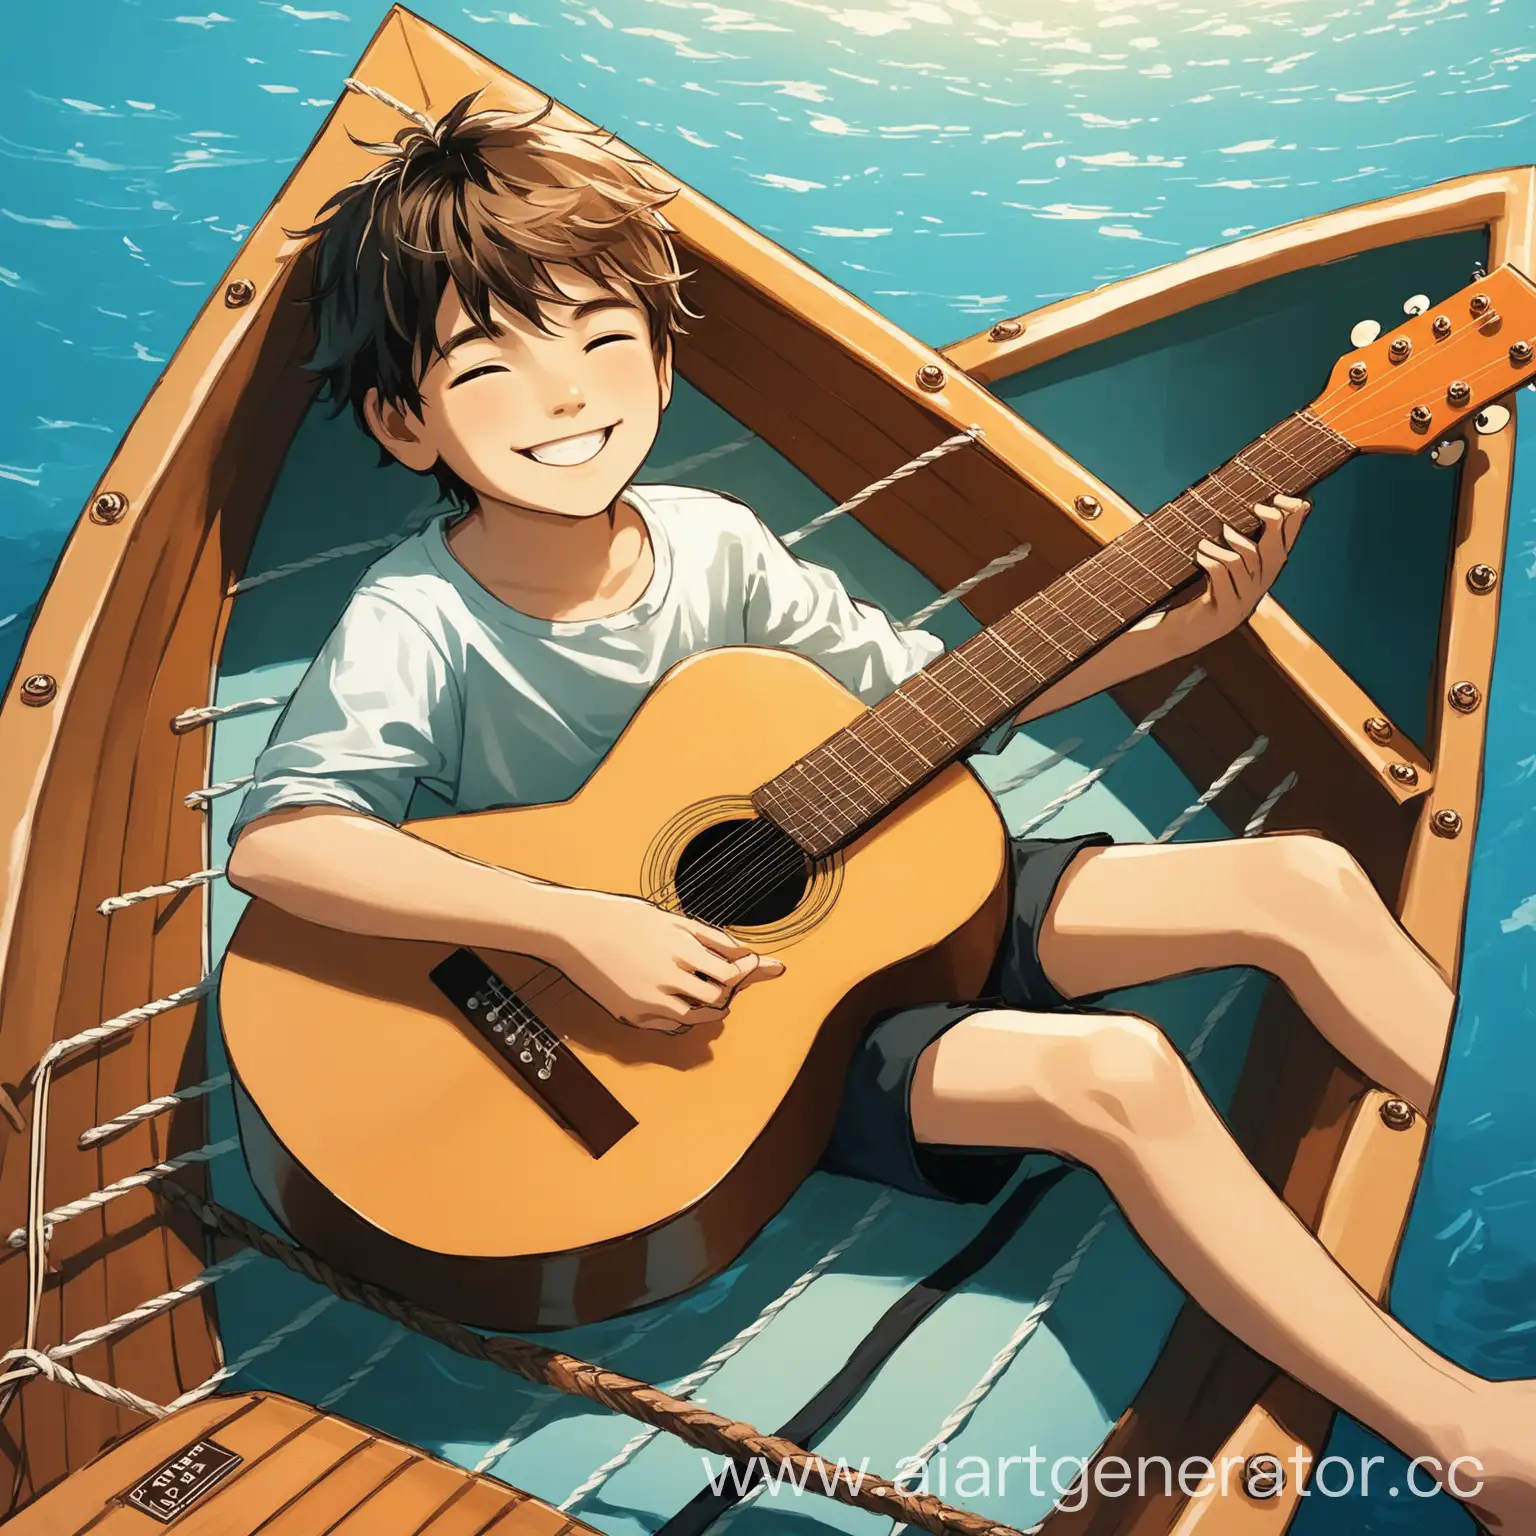 Мальчик с гитарой лежит в лодке и улыбаеца